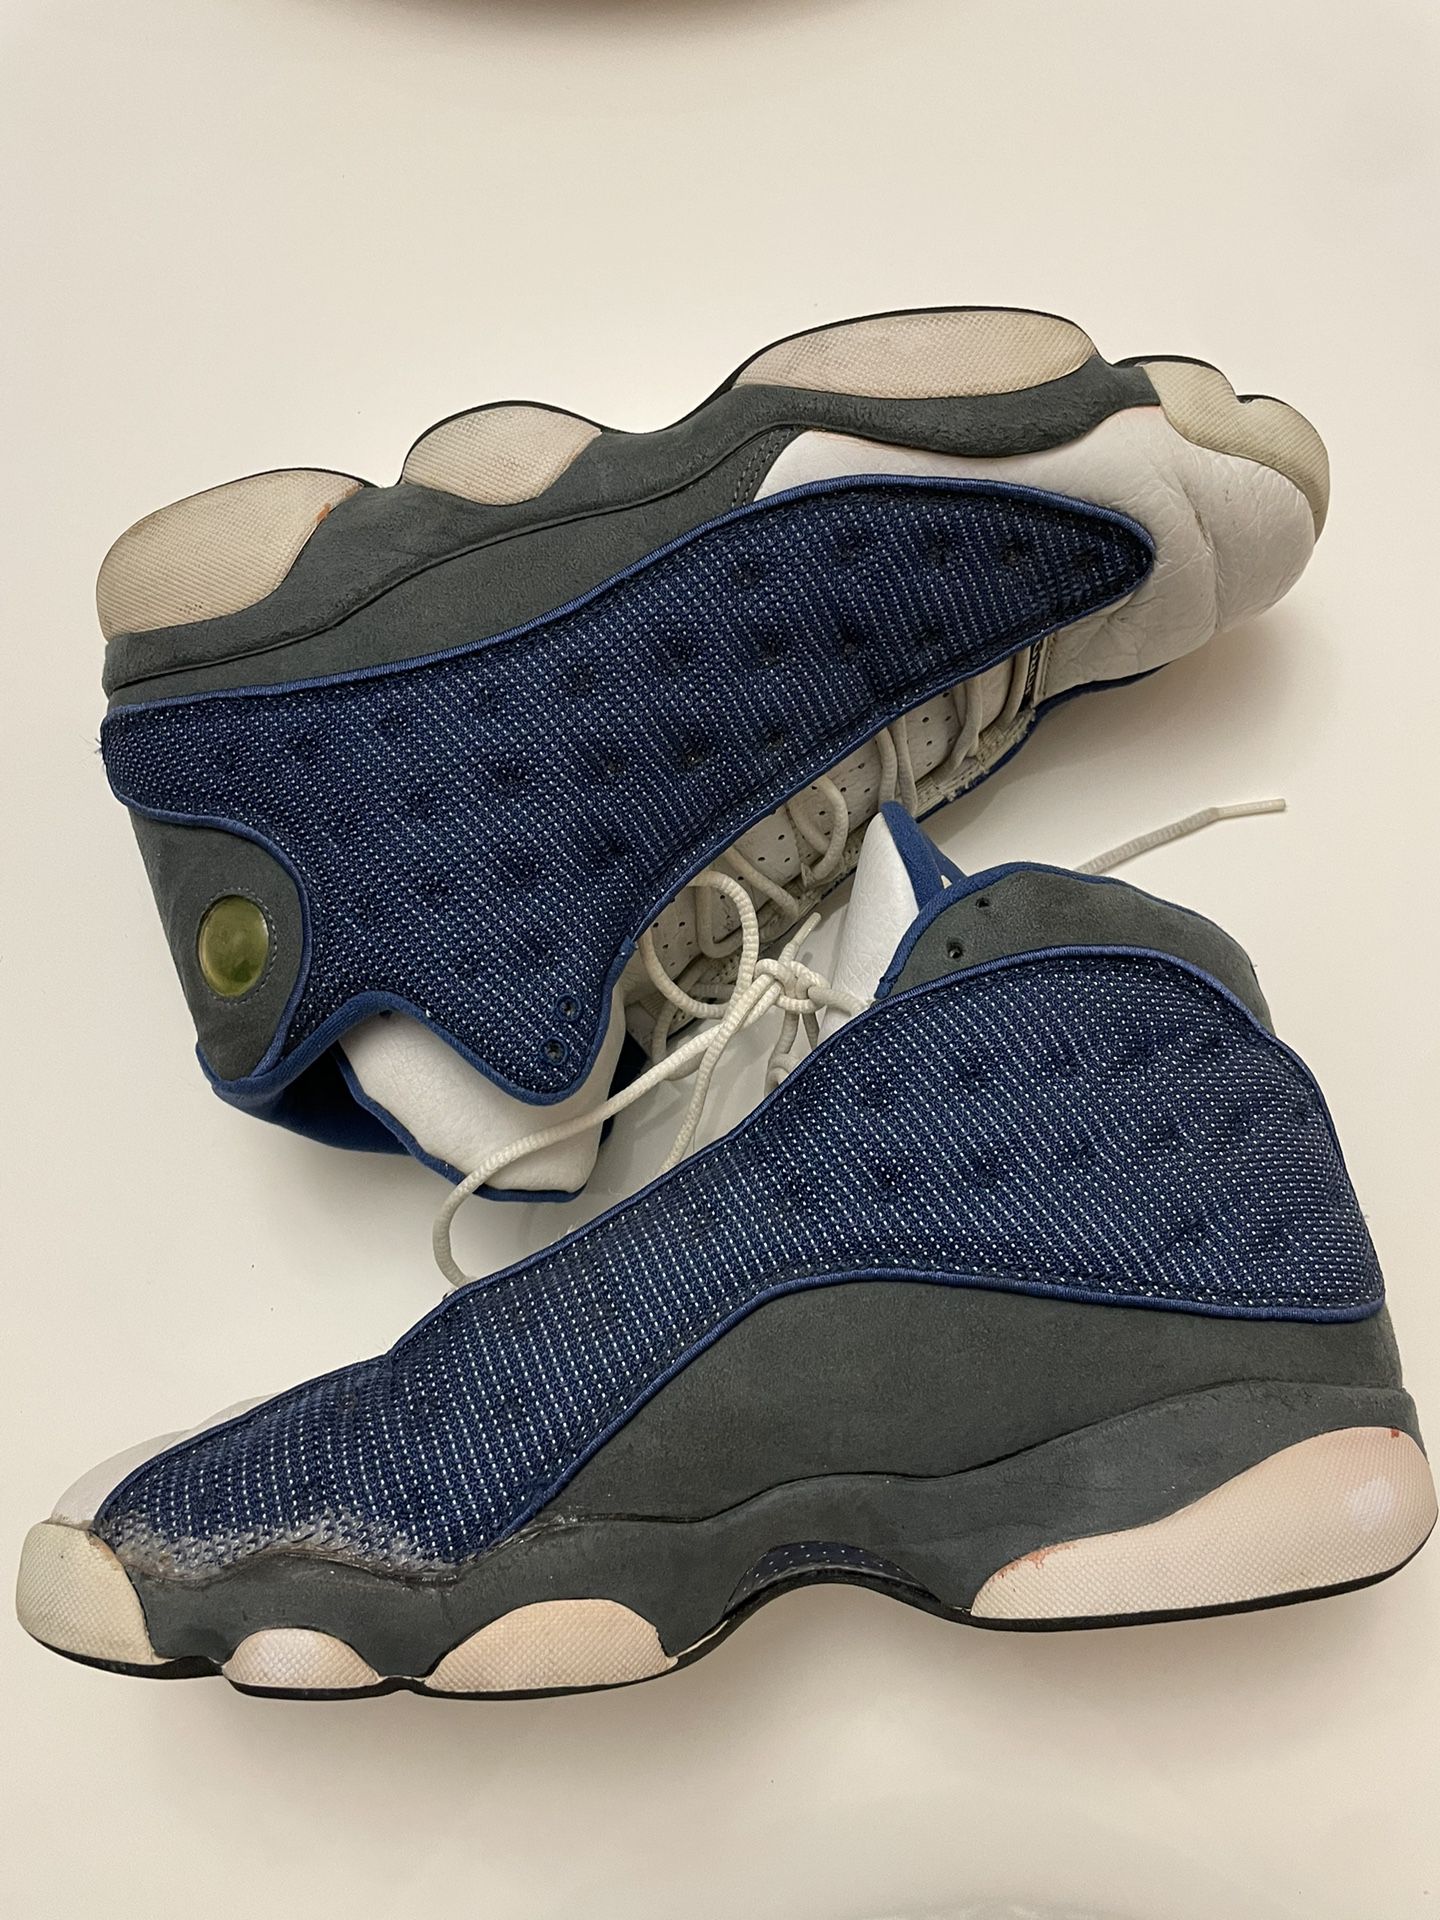 2003 Flint Jordan 13s Size 13 